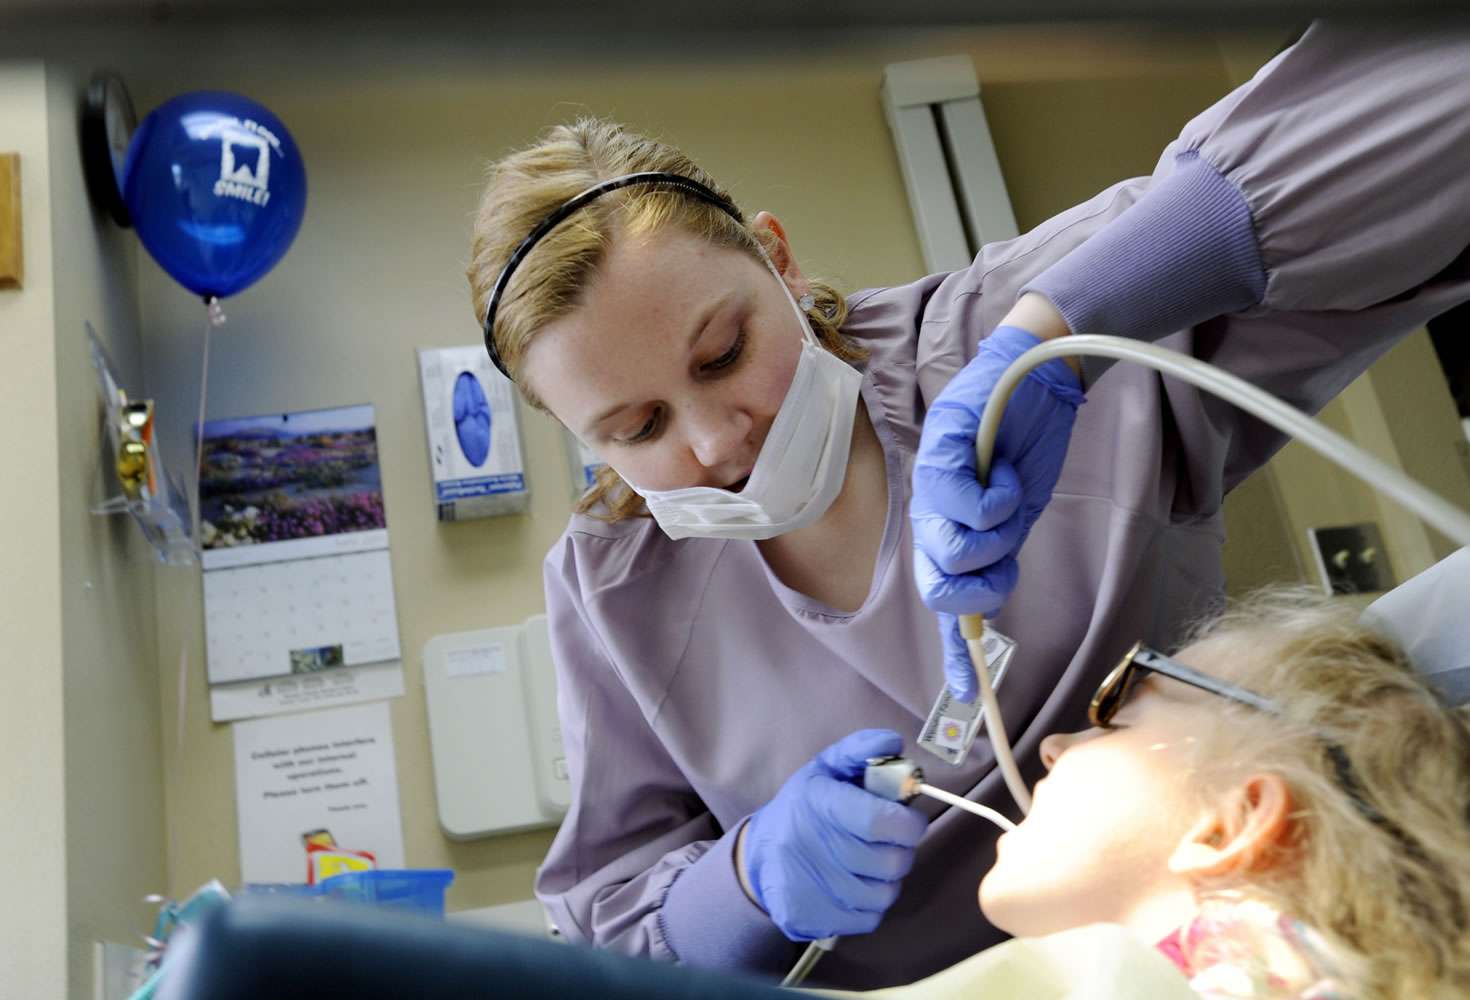 Medicaid restoring full dental